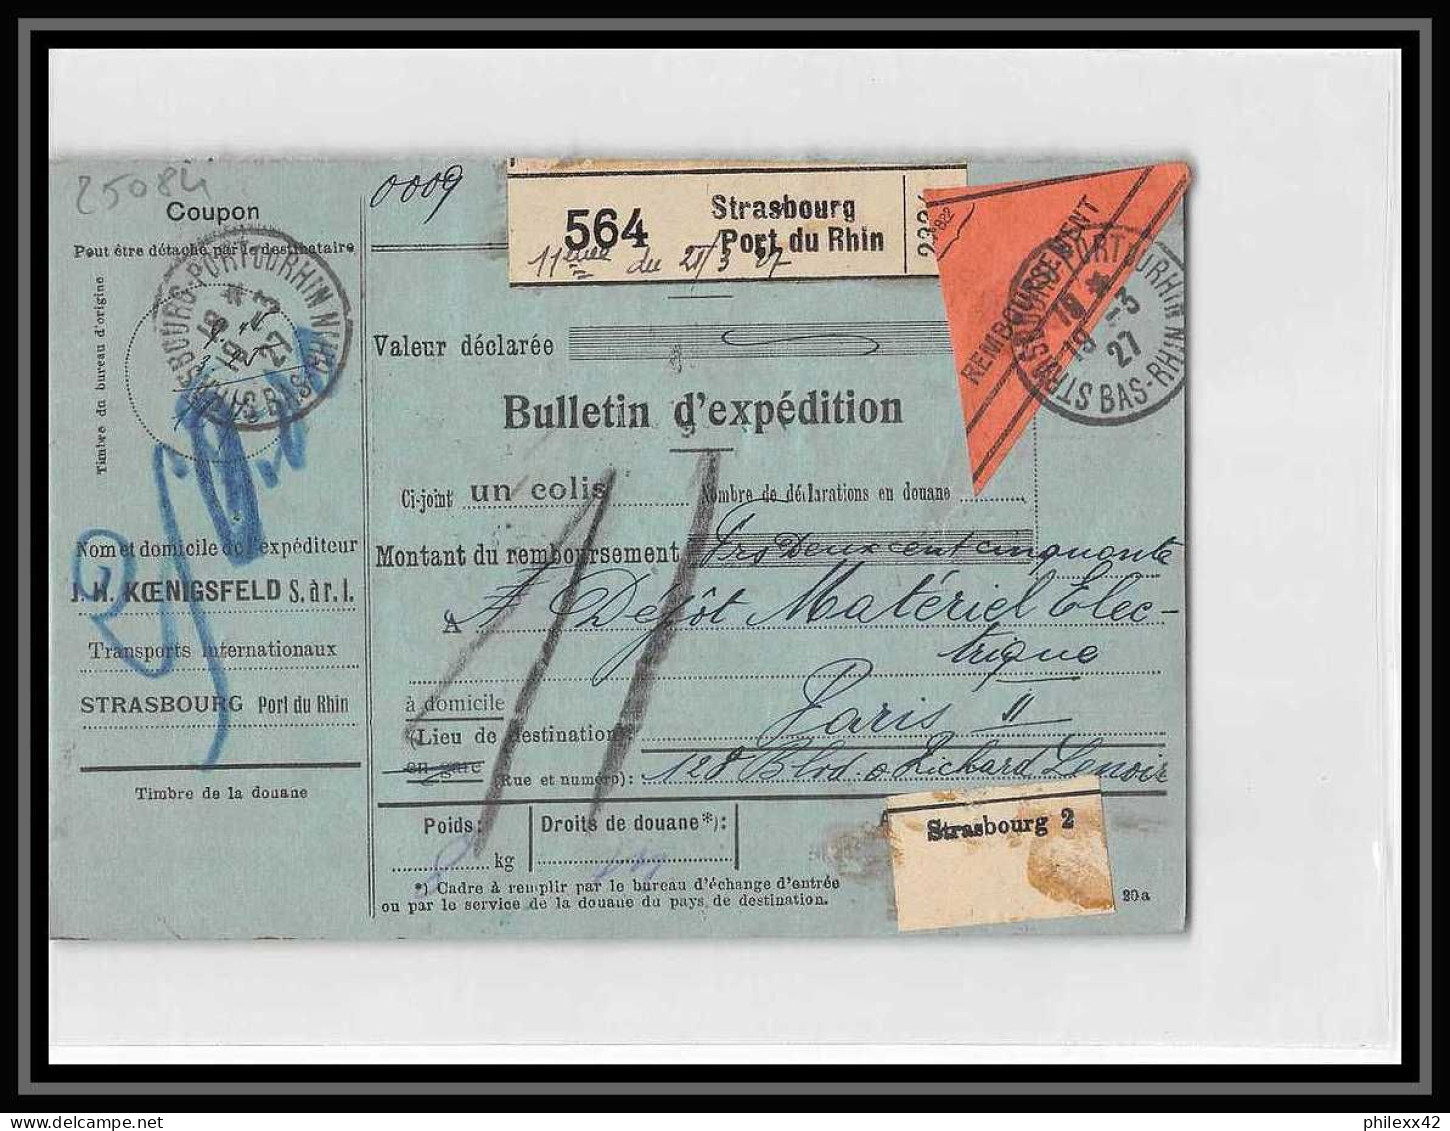 25084 Bulletin D'expédition France Colis Postaux Fiscal Haut Rhin Strasbourg 1927 Merson 145 Contre Remboursement - Briefe U. Dokumente